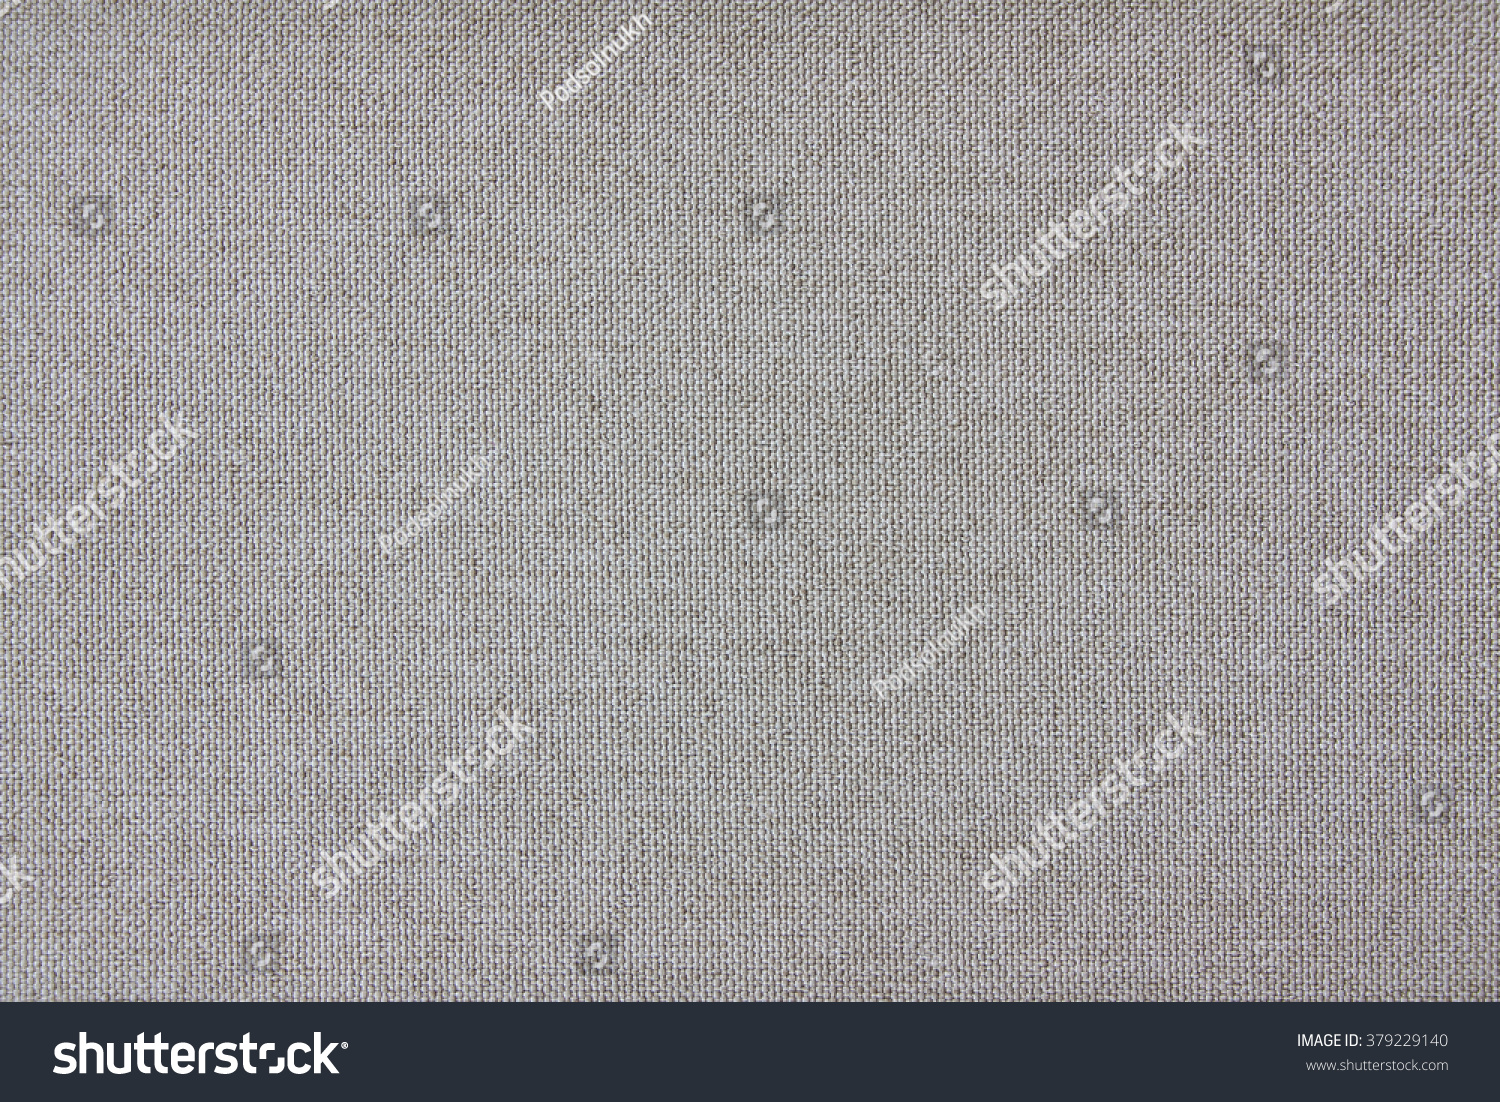 Seamless Fabric Texture Plain View Textile Stock Photo 379229140 ...